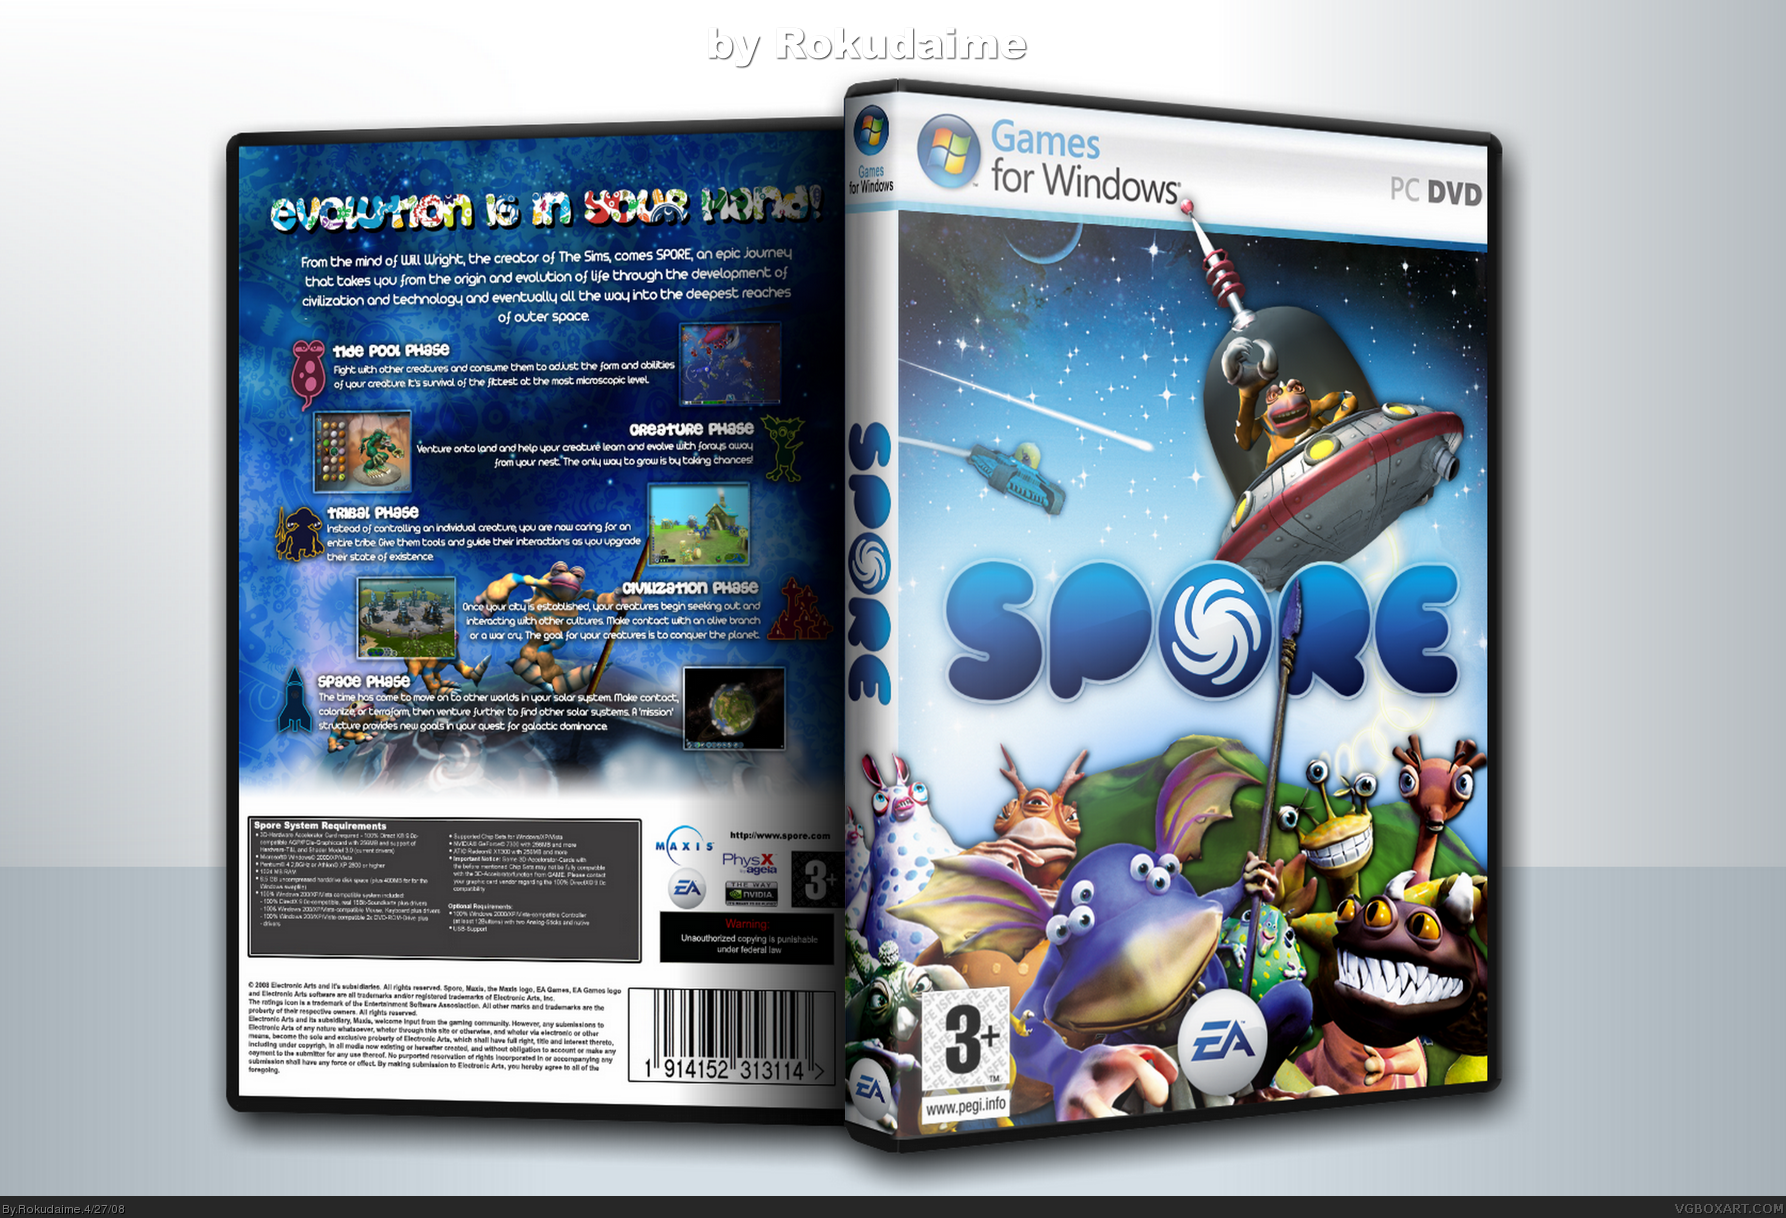 Spore box cover